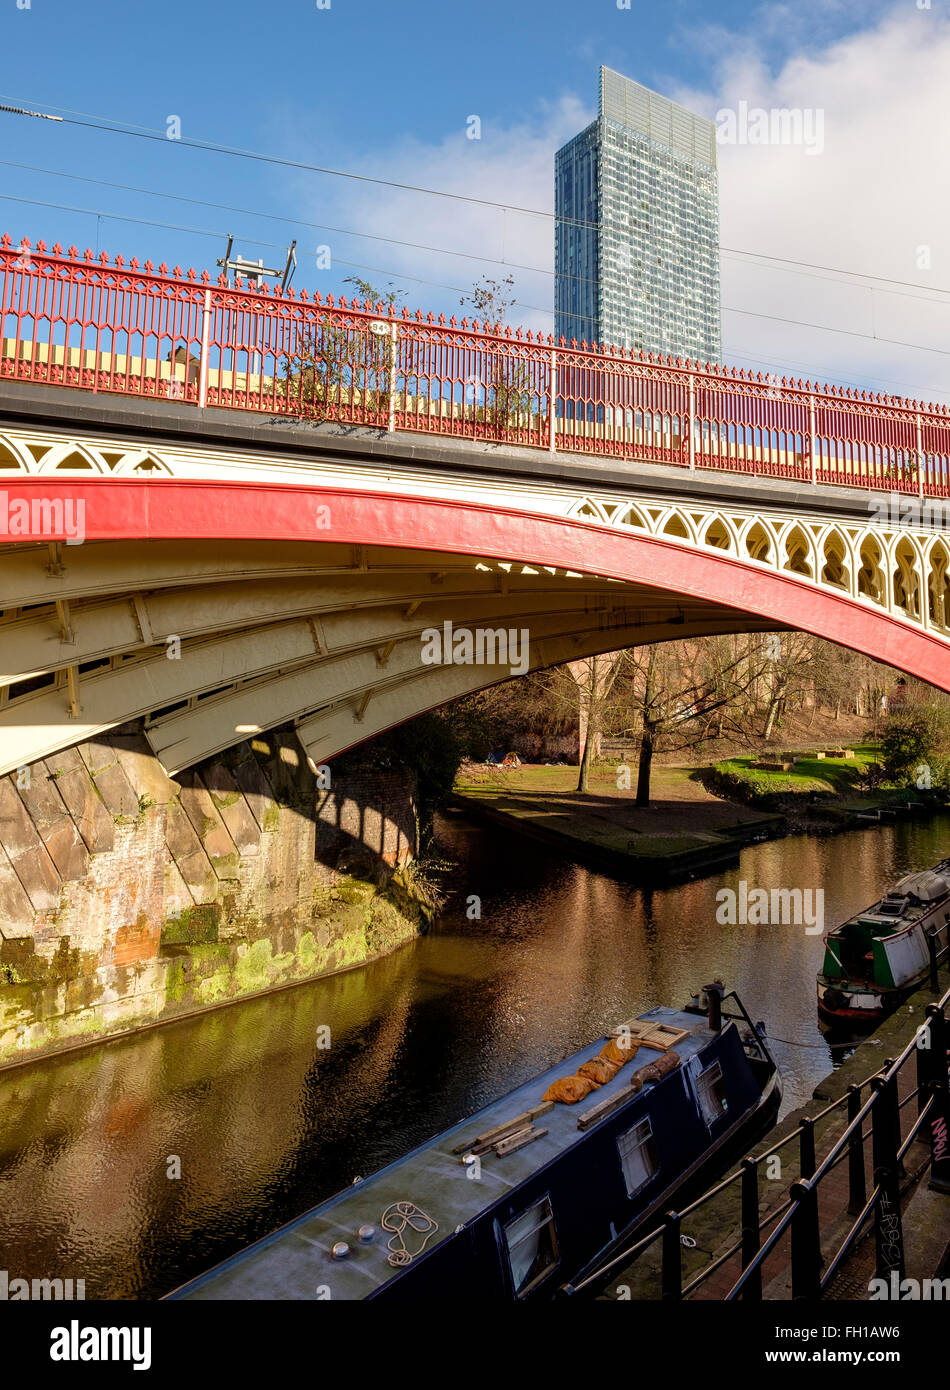 Manchester, UK - 15 Février 2016 : Le viaduc de chemin de fer de fonte victorienne sur le canal à Rochdate le Castlefield, Manchester Banque D'Images